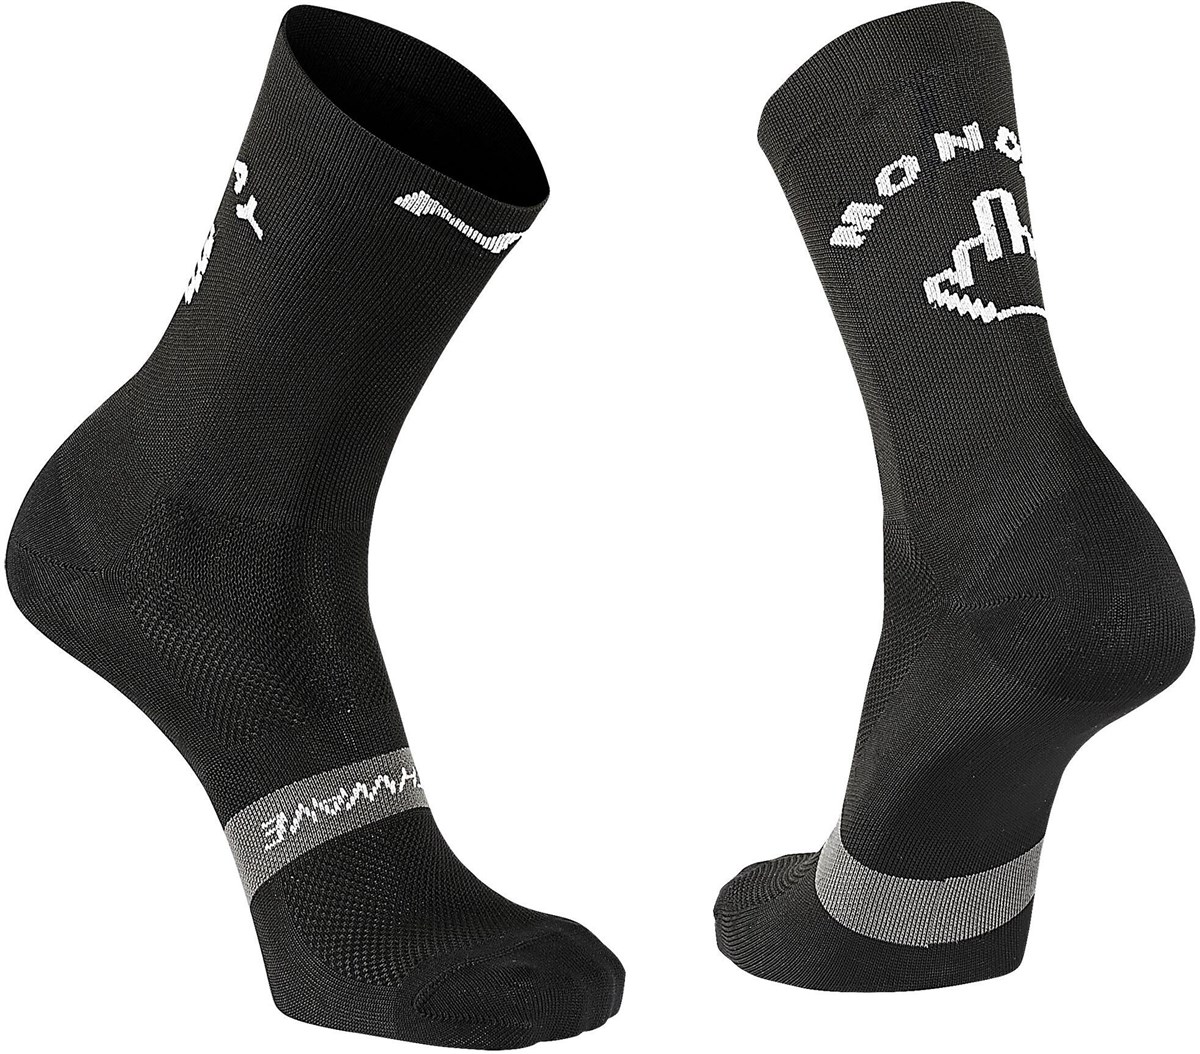 Northwave Sunday-Monday Socks product image